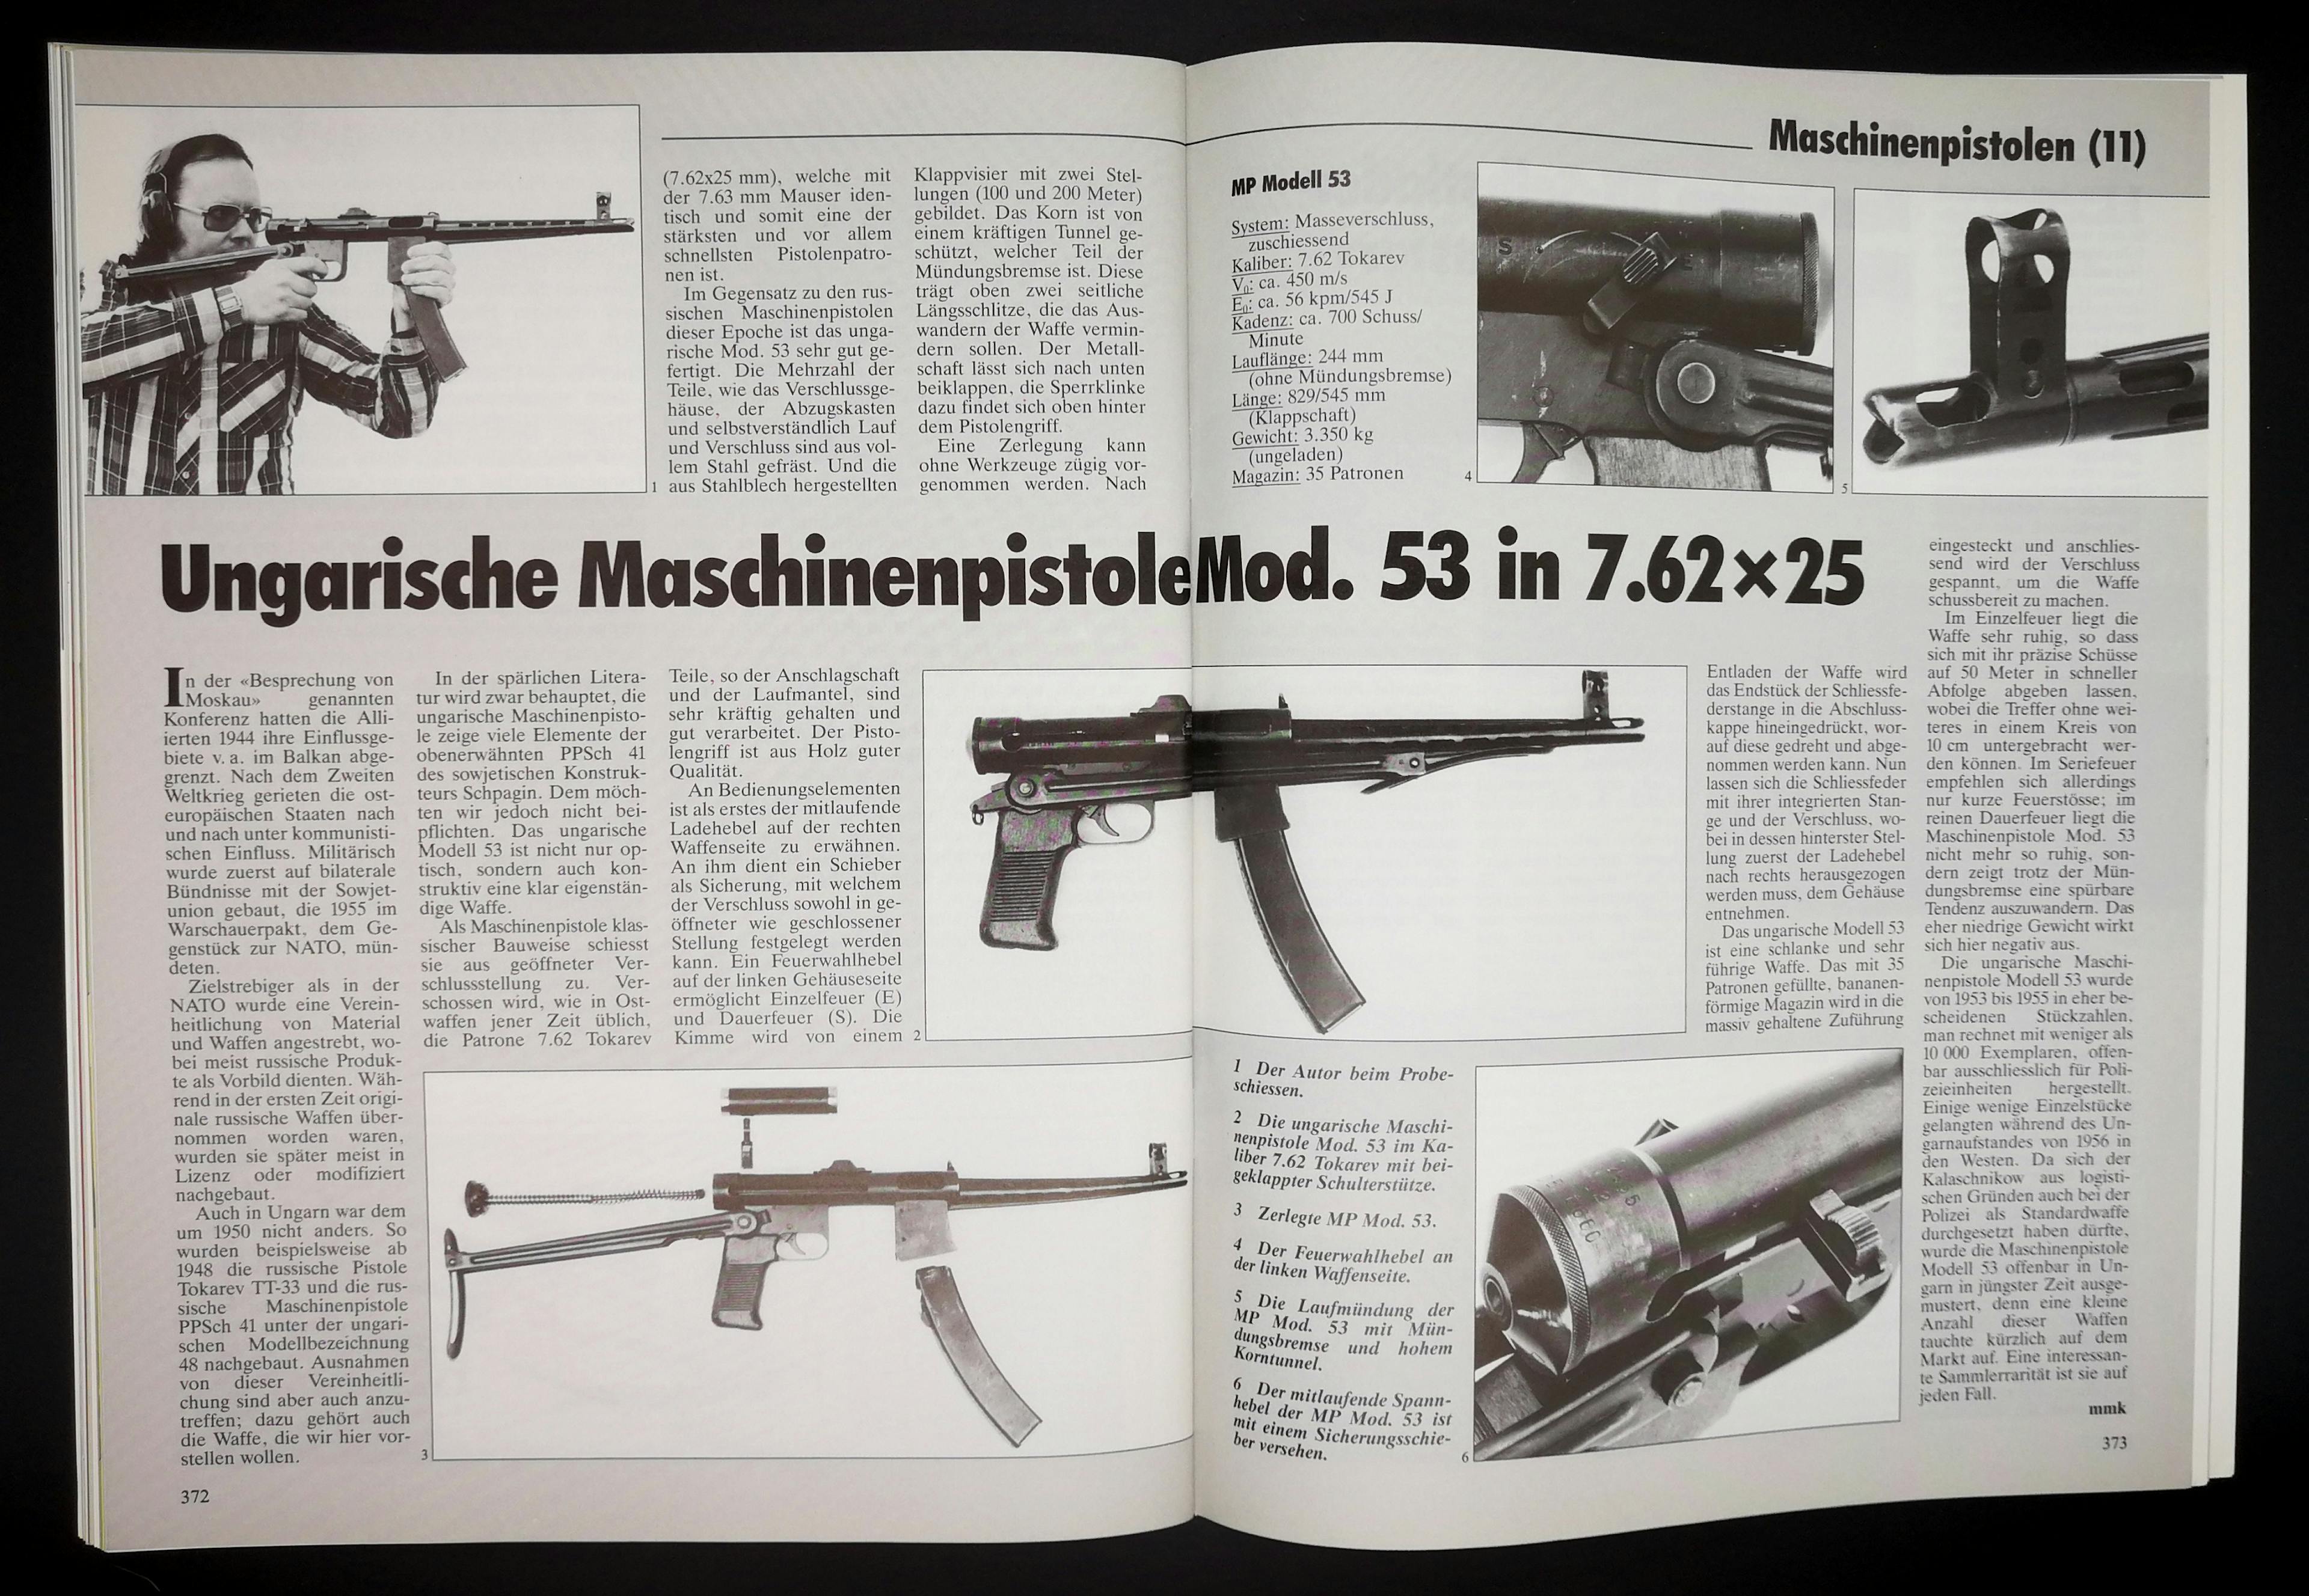 SWM-Redakteur in den 80ern müsste man sein. Eine solche Maschinenpistole würde wohl jeder gerne testen wollen.
